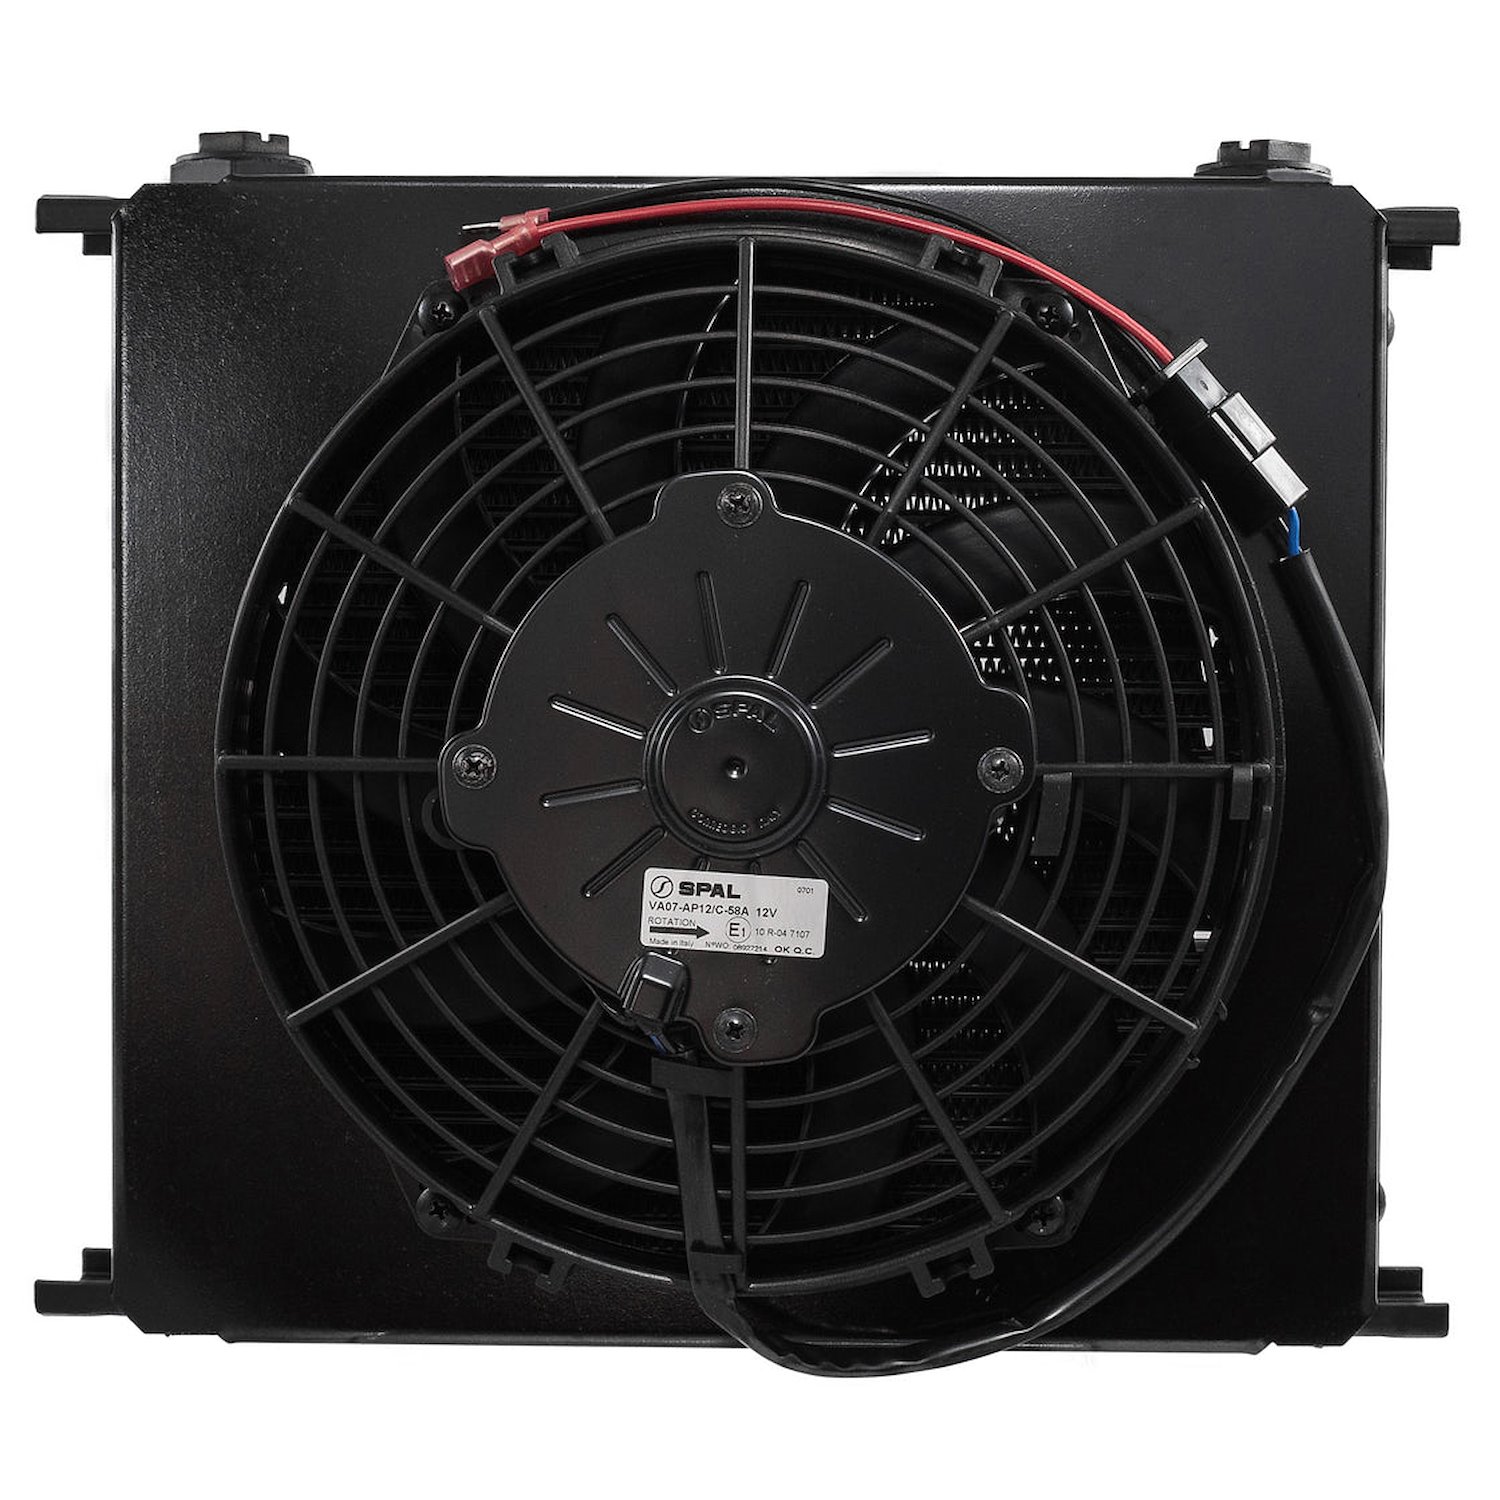 FP63422 mmI ProLine STD Fanpack, 9.0 in. Fan mounted to 6-Series 34-Row Oil Cooler